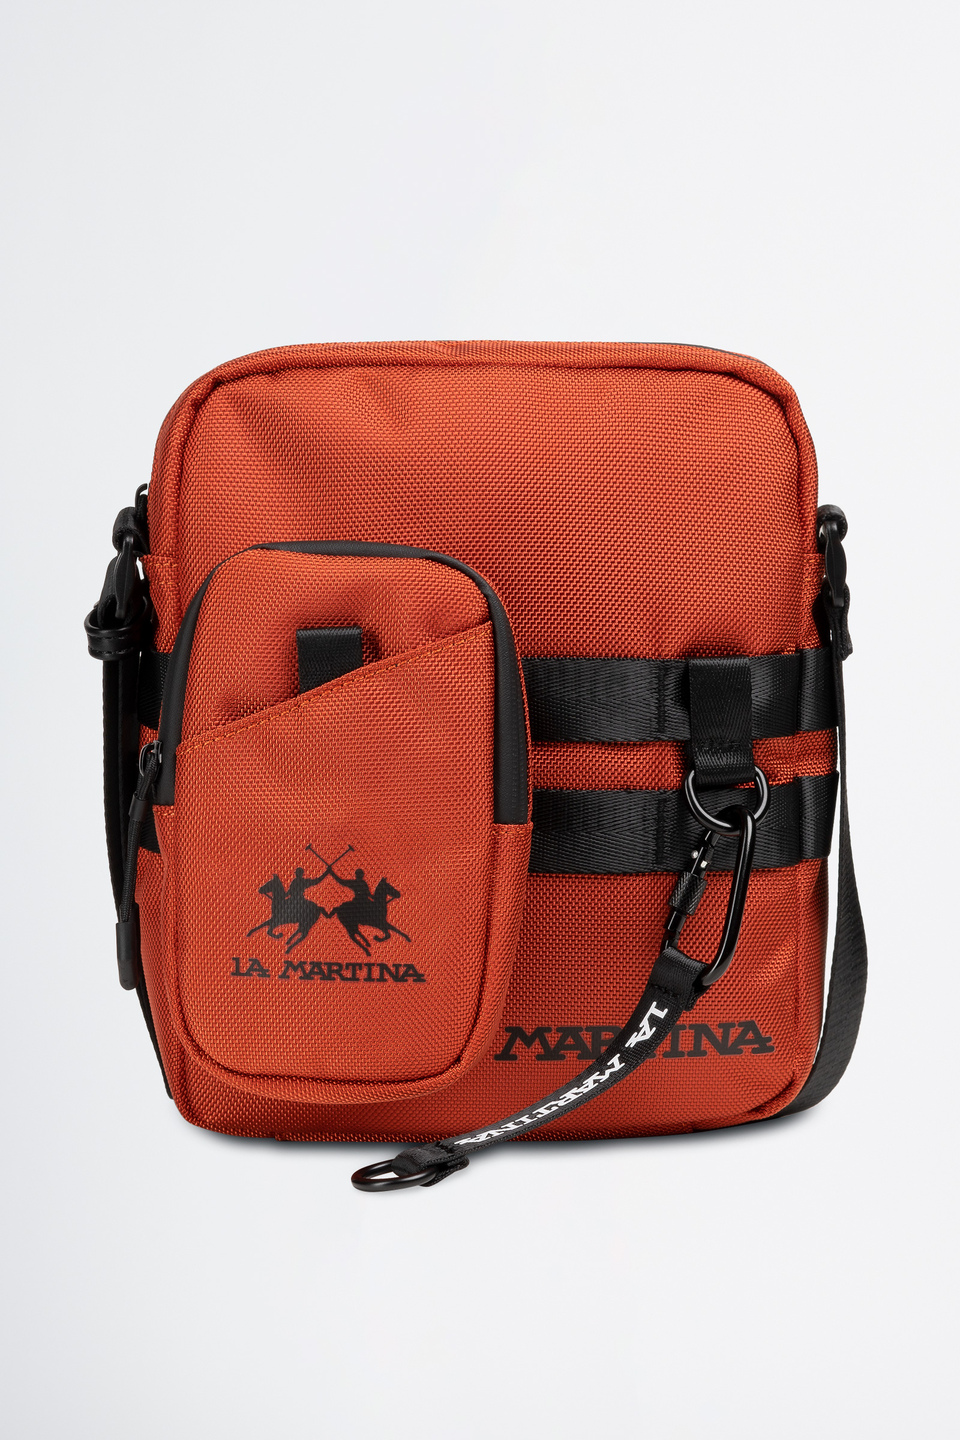 Tasche mit Schulterriemen aus Synthetik | La Martina - Official Online Shop